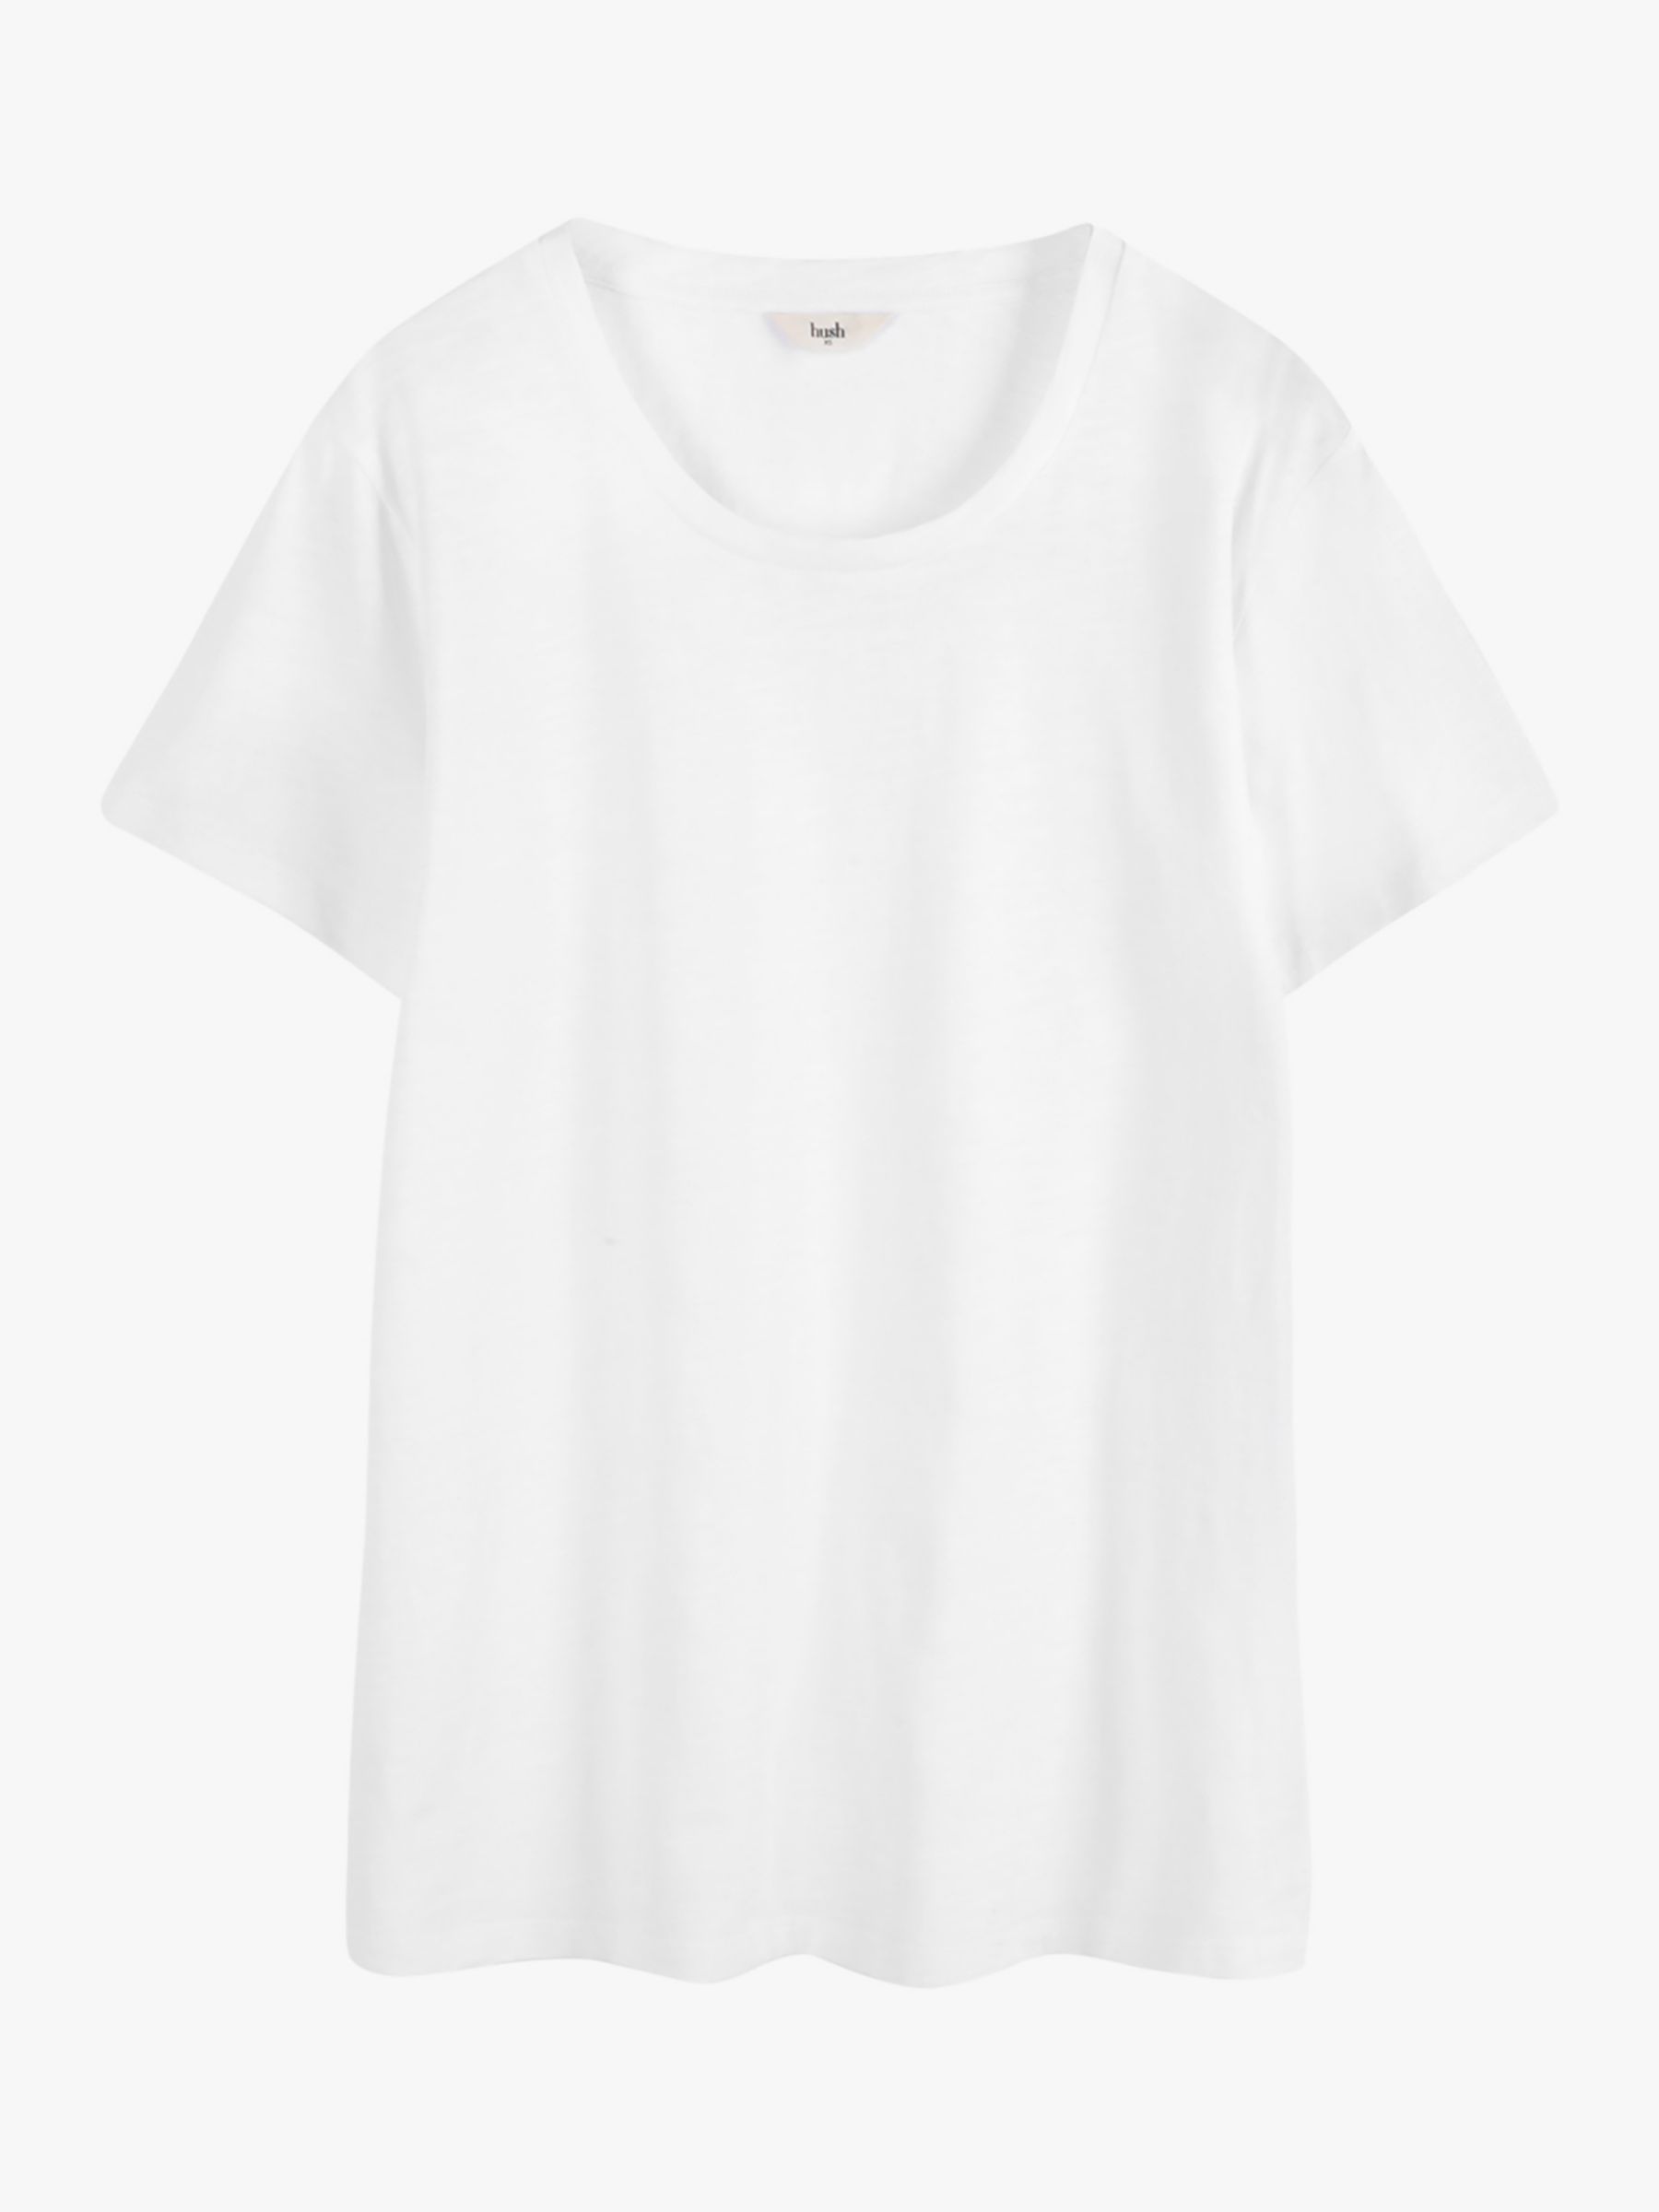 hush Cali Cotton Crew Neck T-Shirt, White at John Lewis & Partners